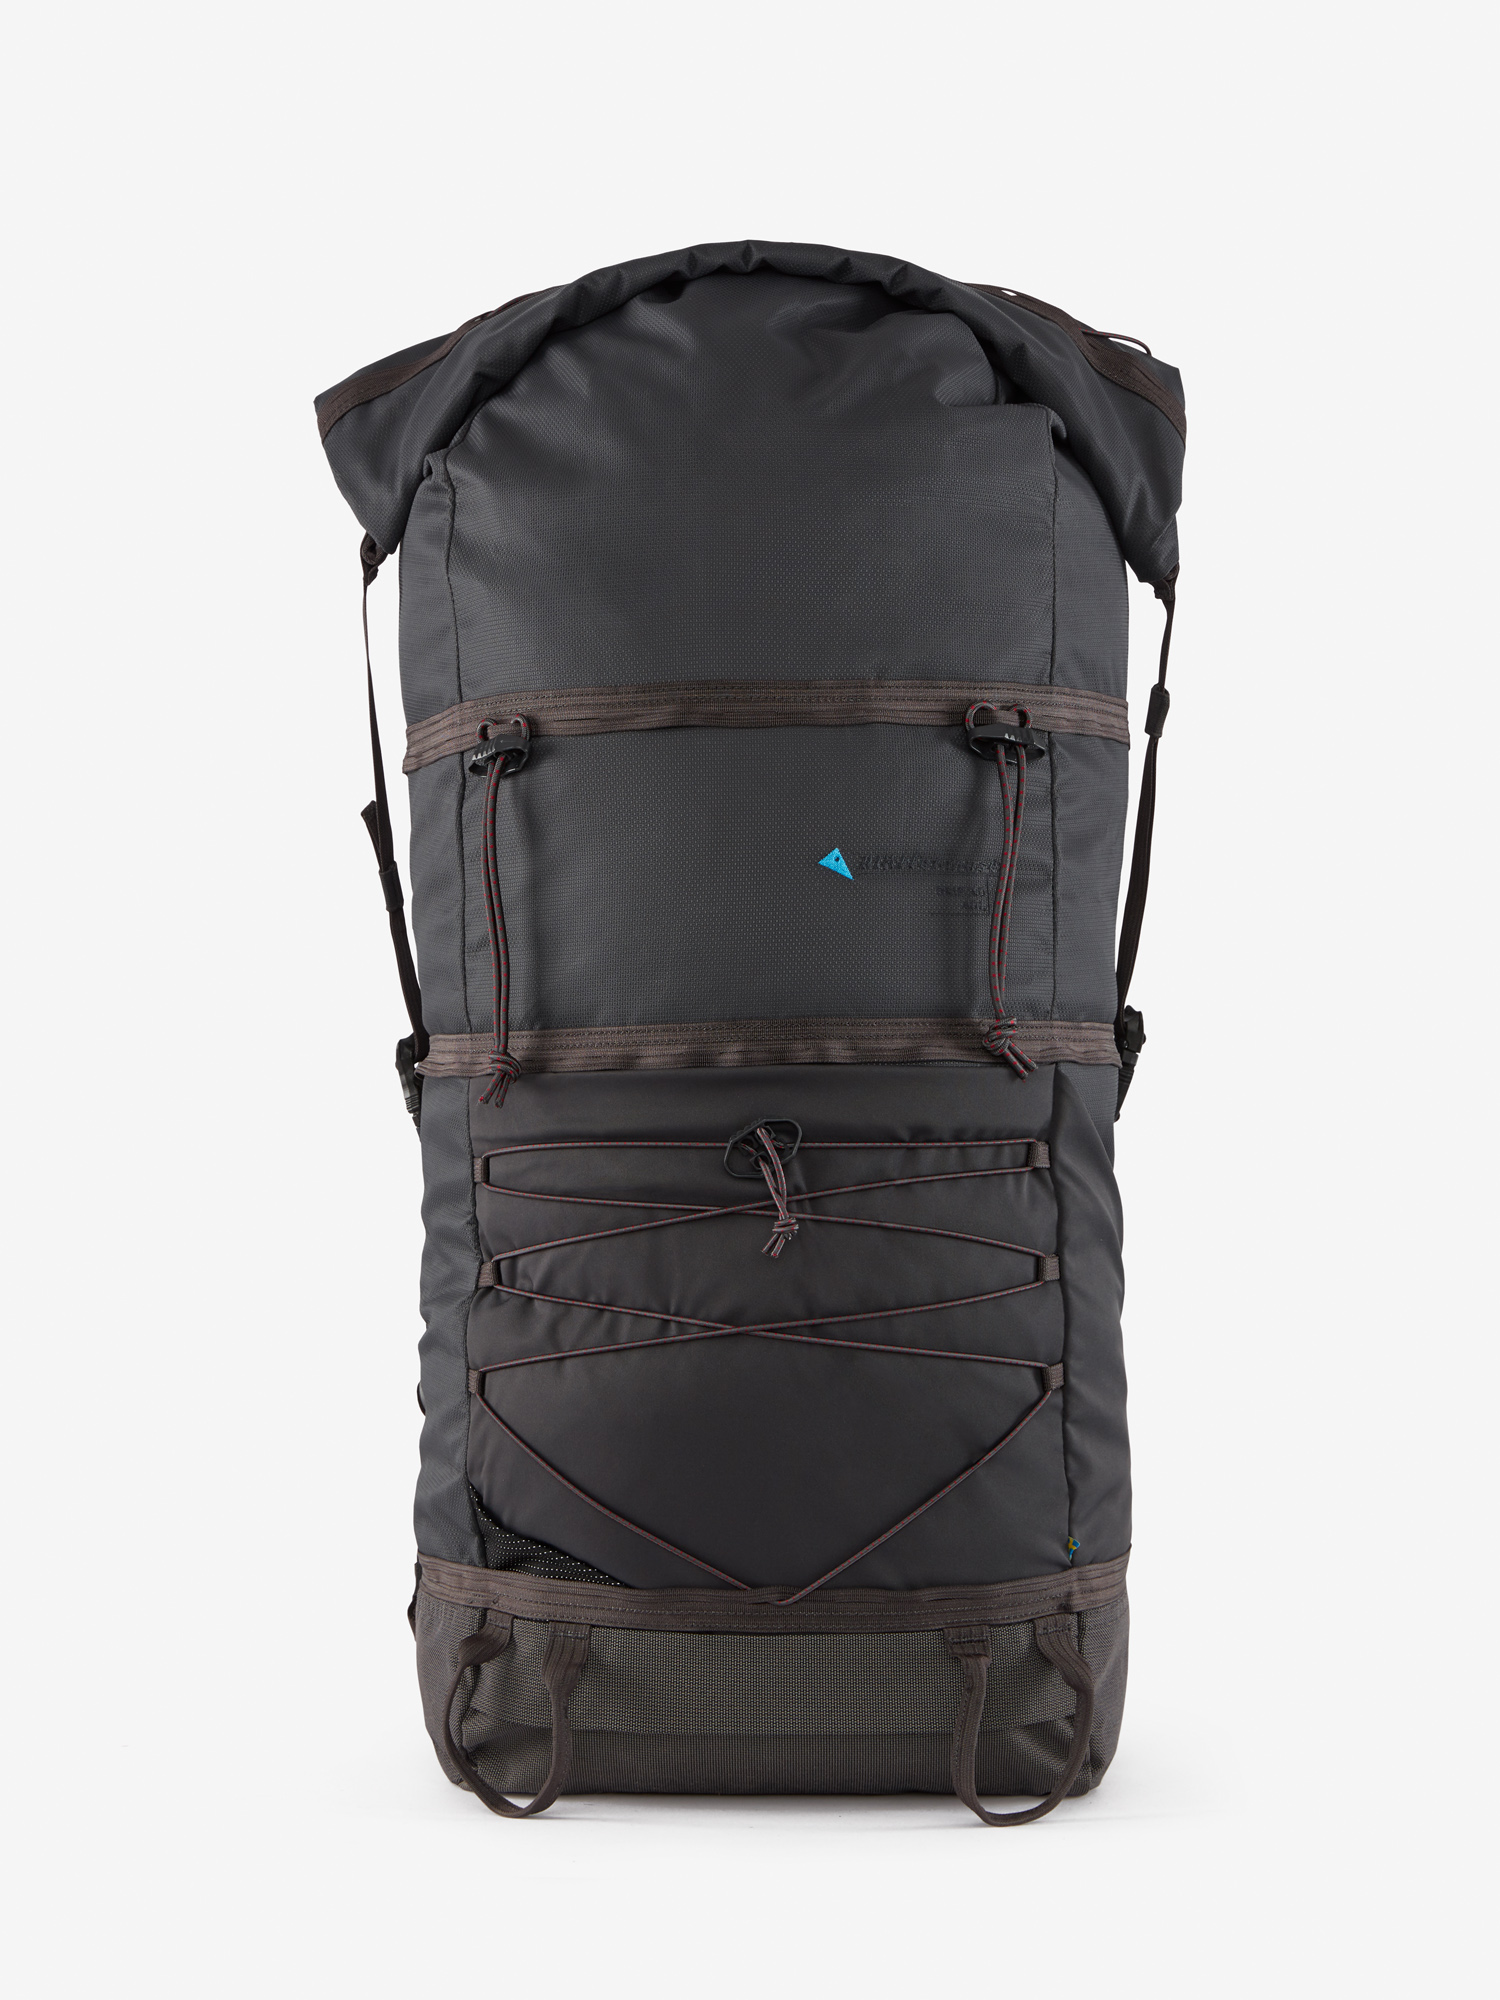 40427U01 - Grip 3.0 Backpack 40L - Raven